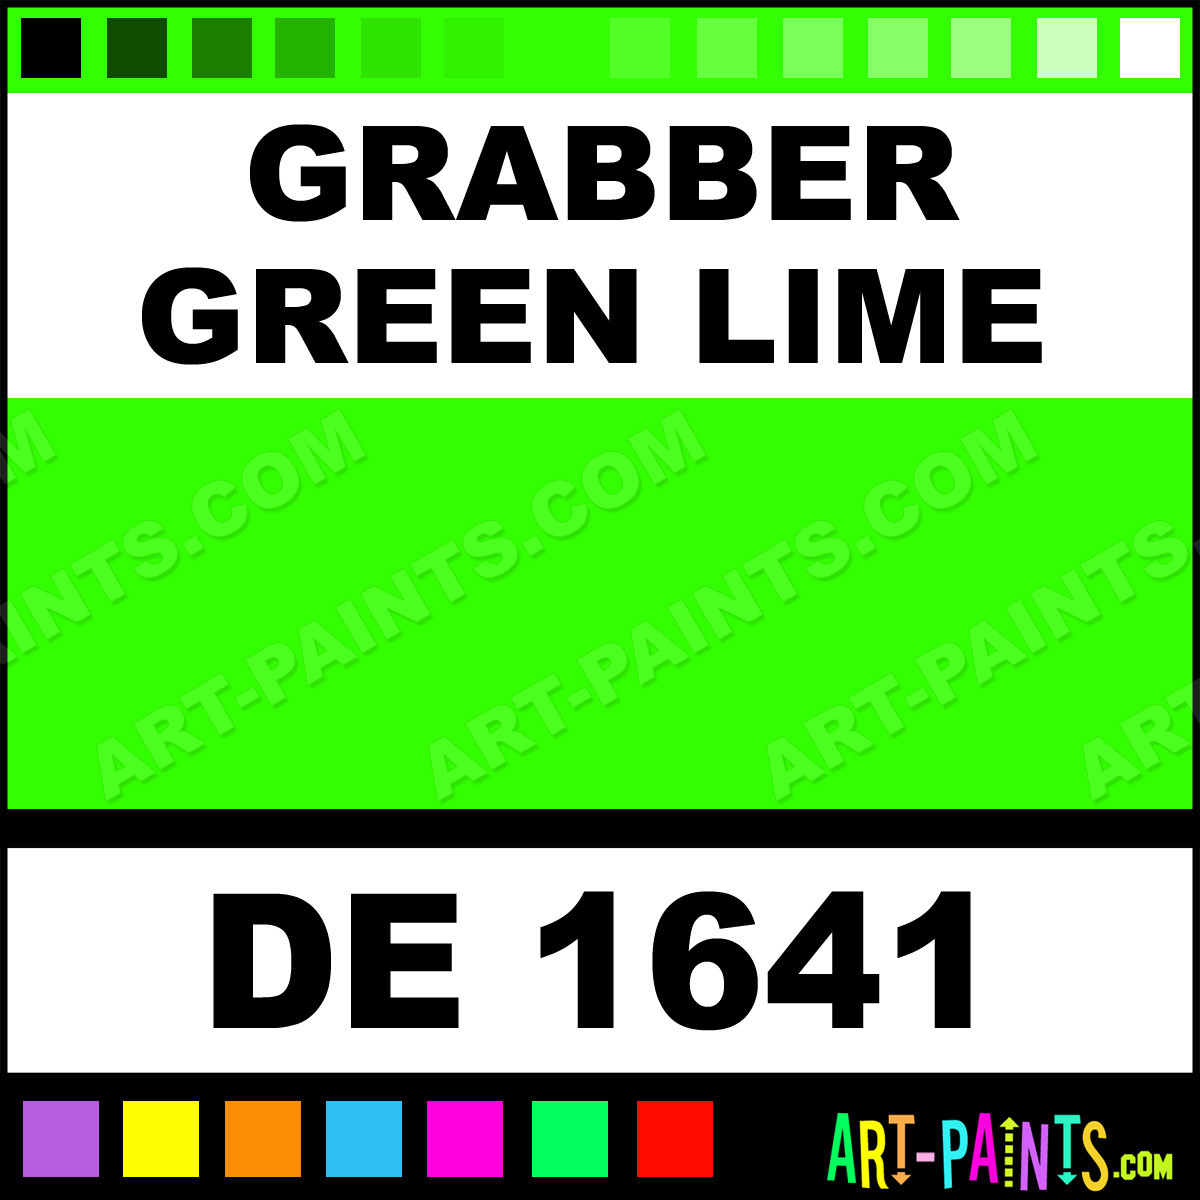 http://www.art-paints.com/Paints/Enamel/Dupli-Color/Grabber-Green-Lime/Grabber-Green-Lime-lg.jpg